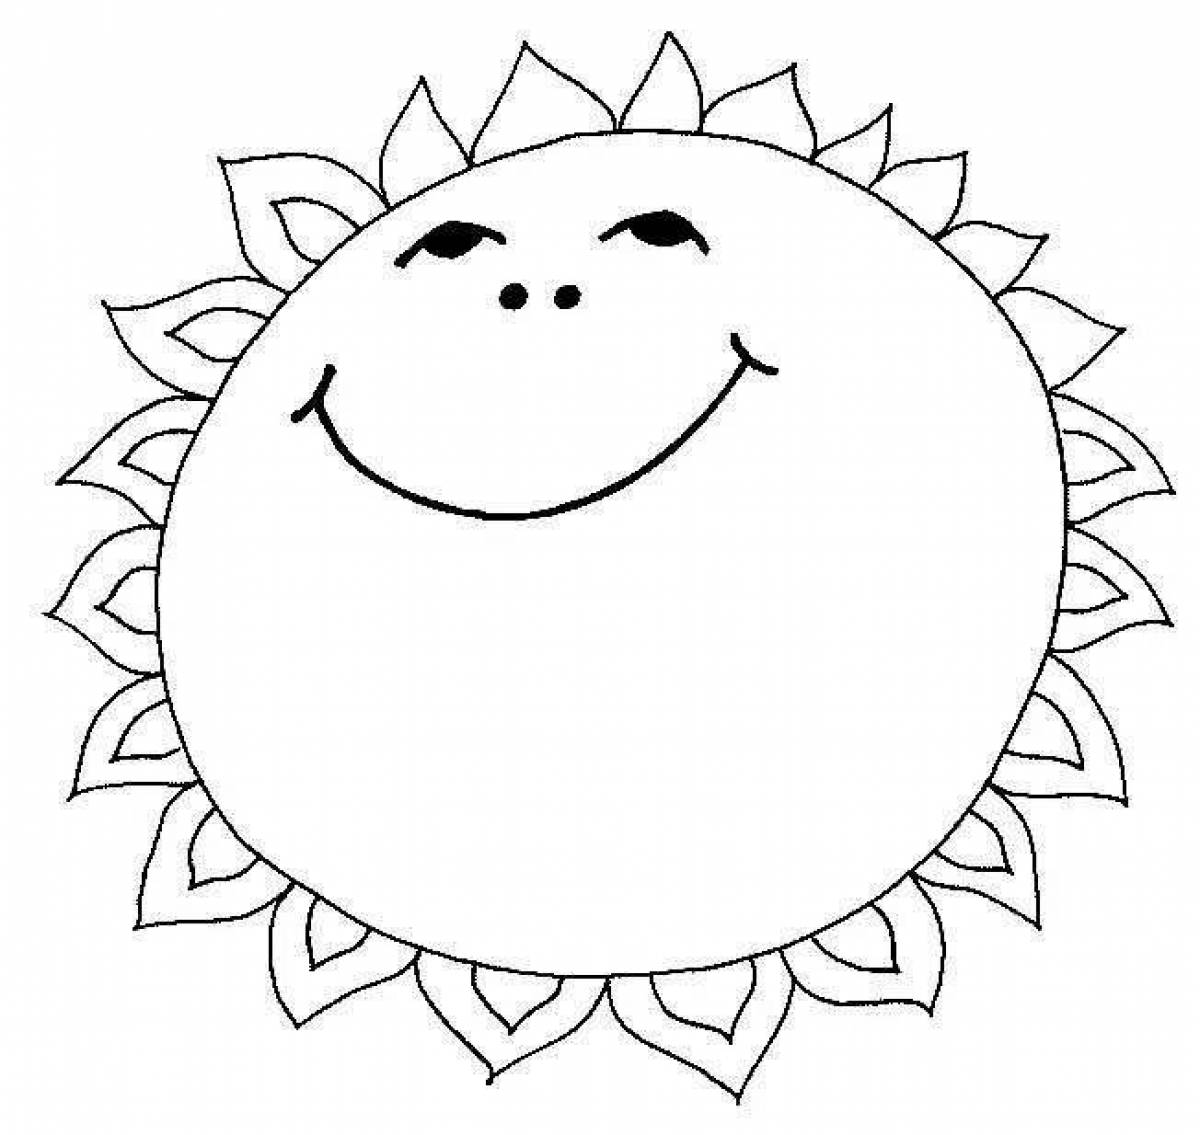 Яркая раскраска солнечная картинка для детей